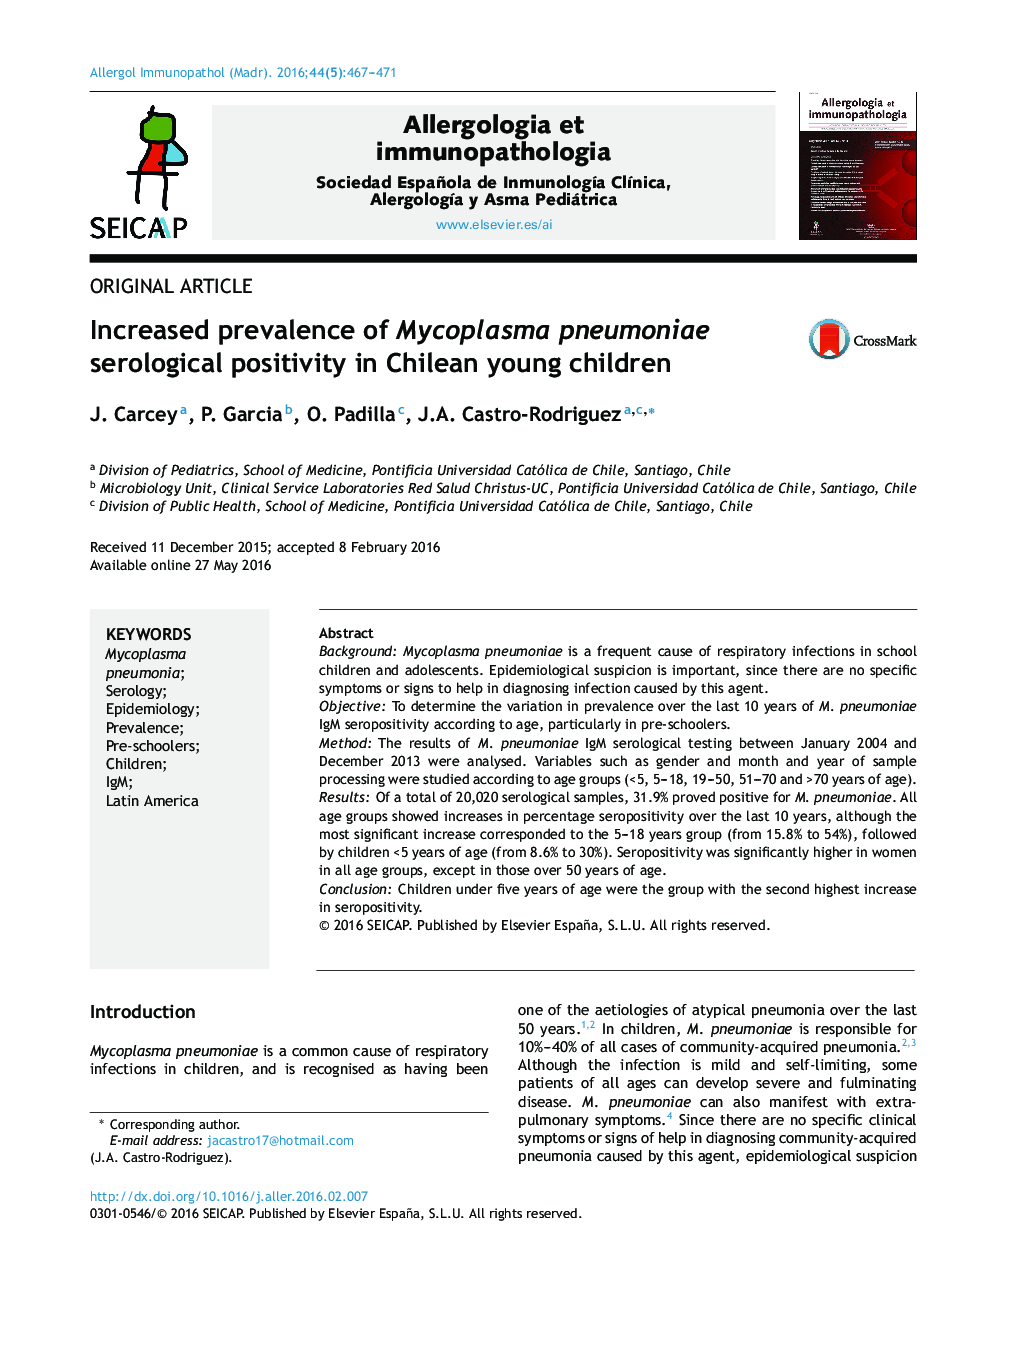 افزایش شیوع مثبت سرولوژیکی مایکوپلاسما پنومونیه در کودکان جوان شیلی 